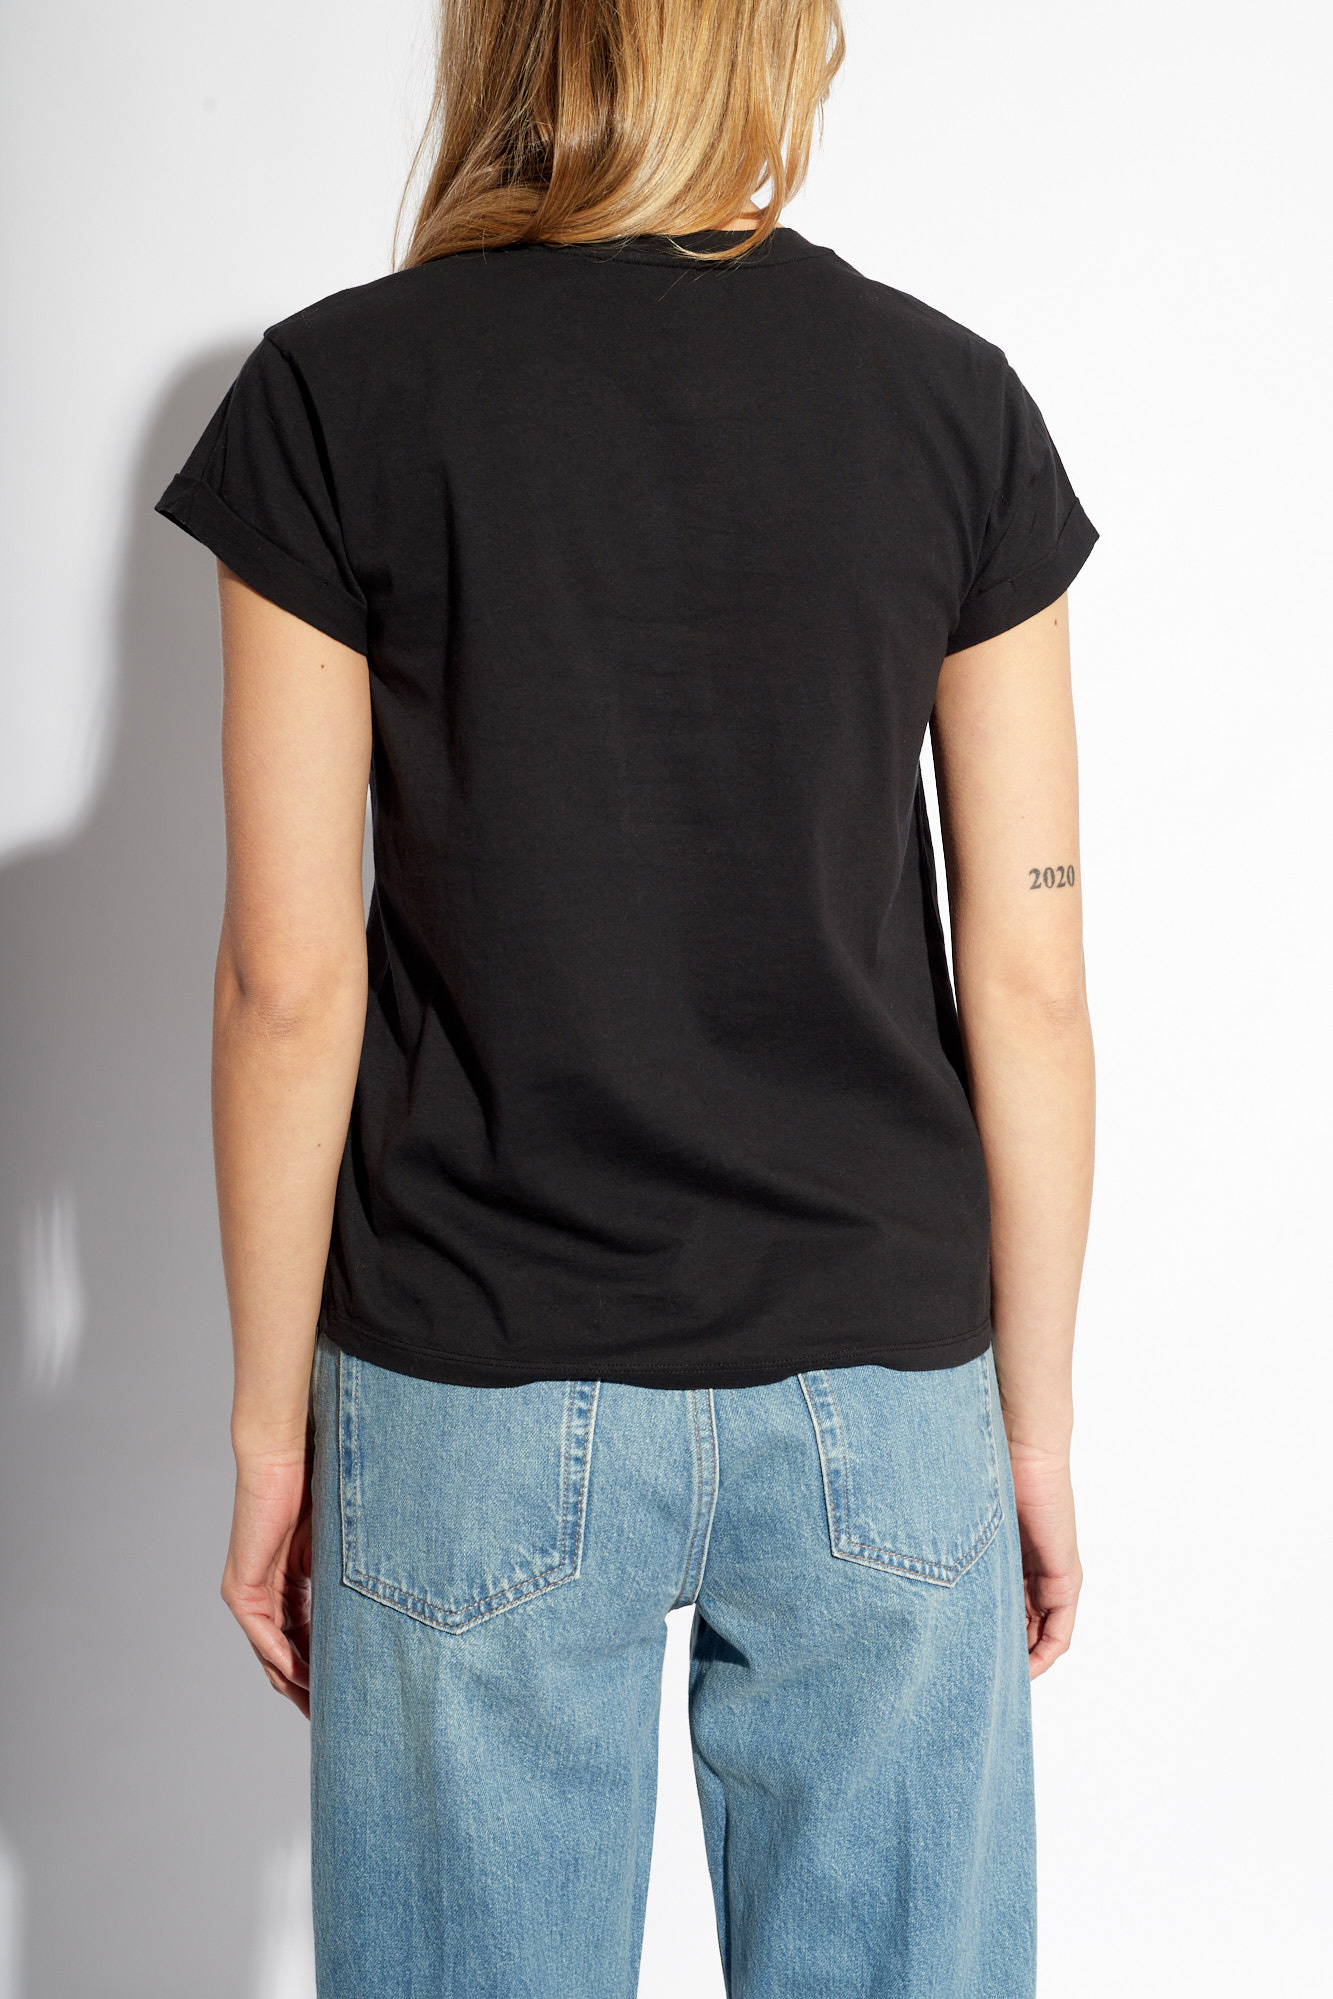 AllSaints ‘Anna’ printed T-shirt